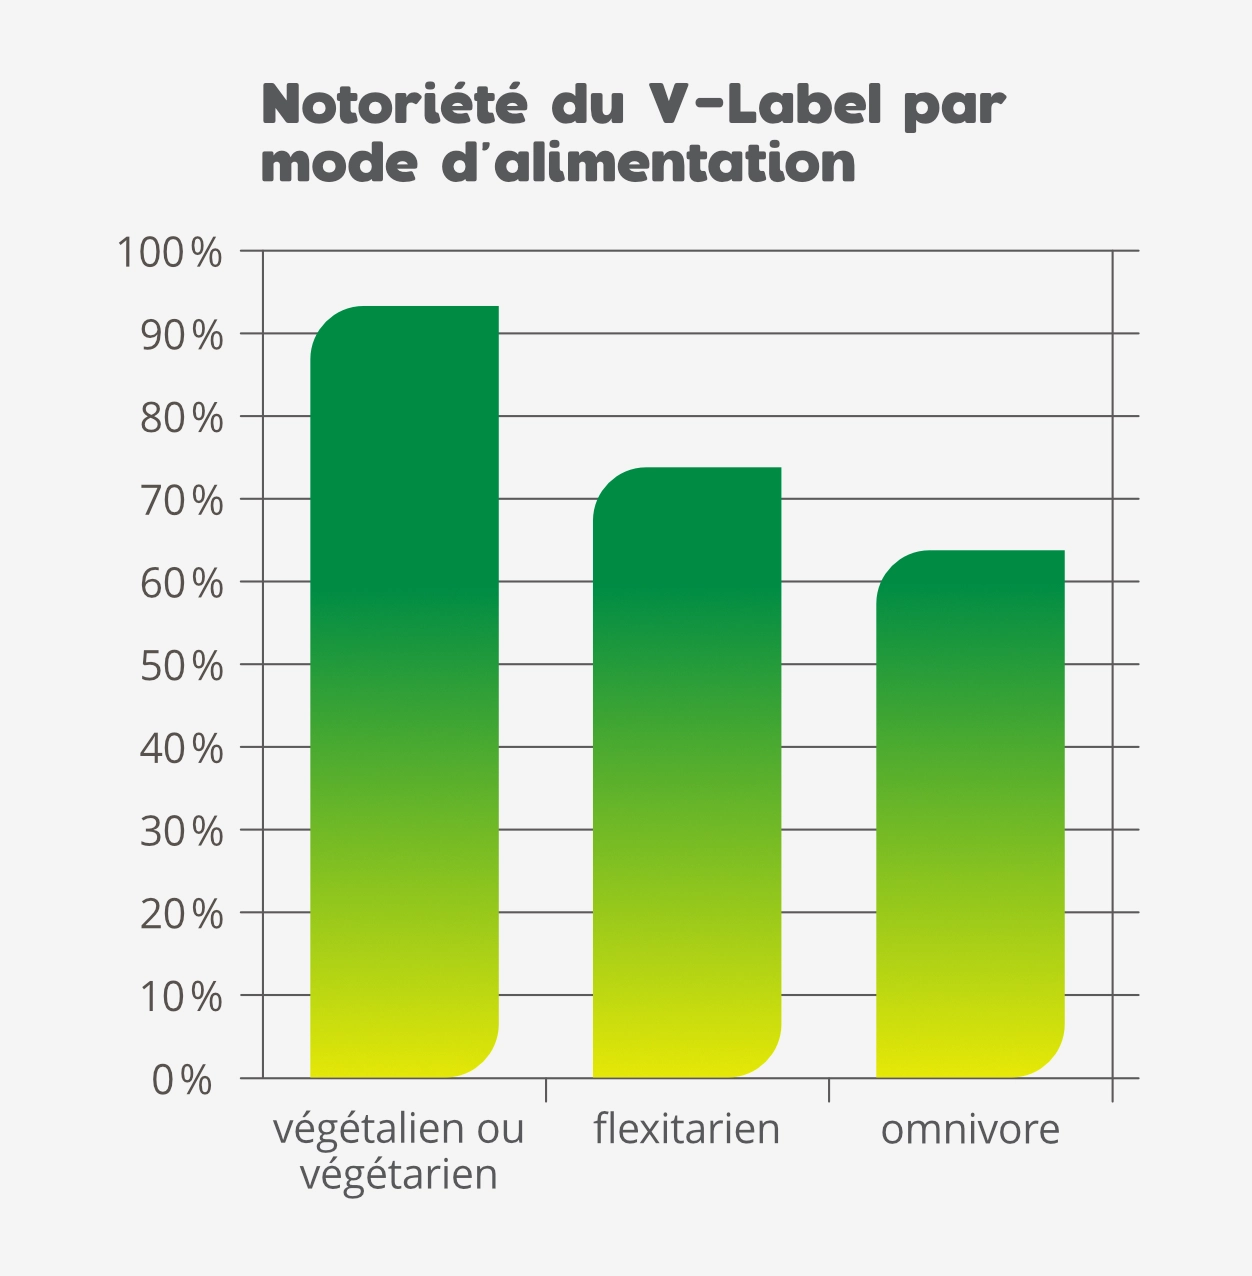 Notoriété du V-Label: résultats par mode d'alimentation